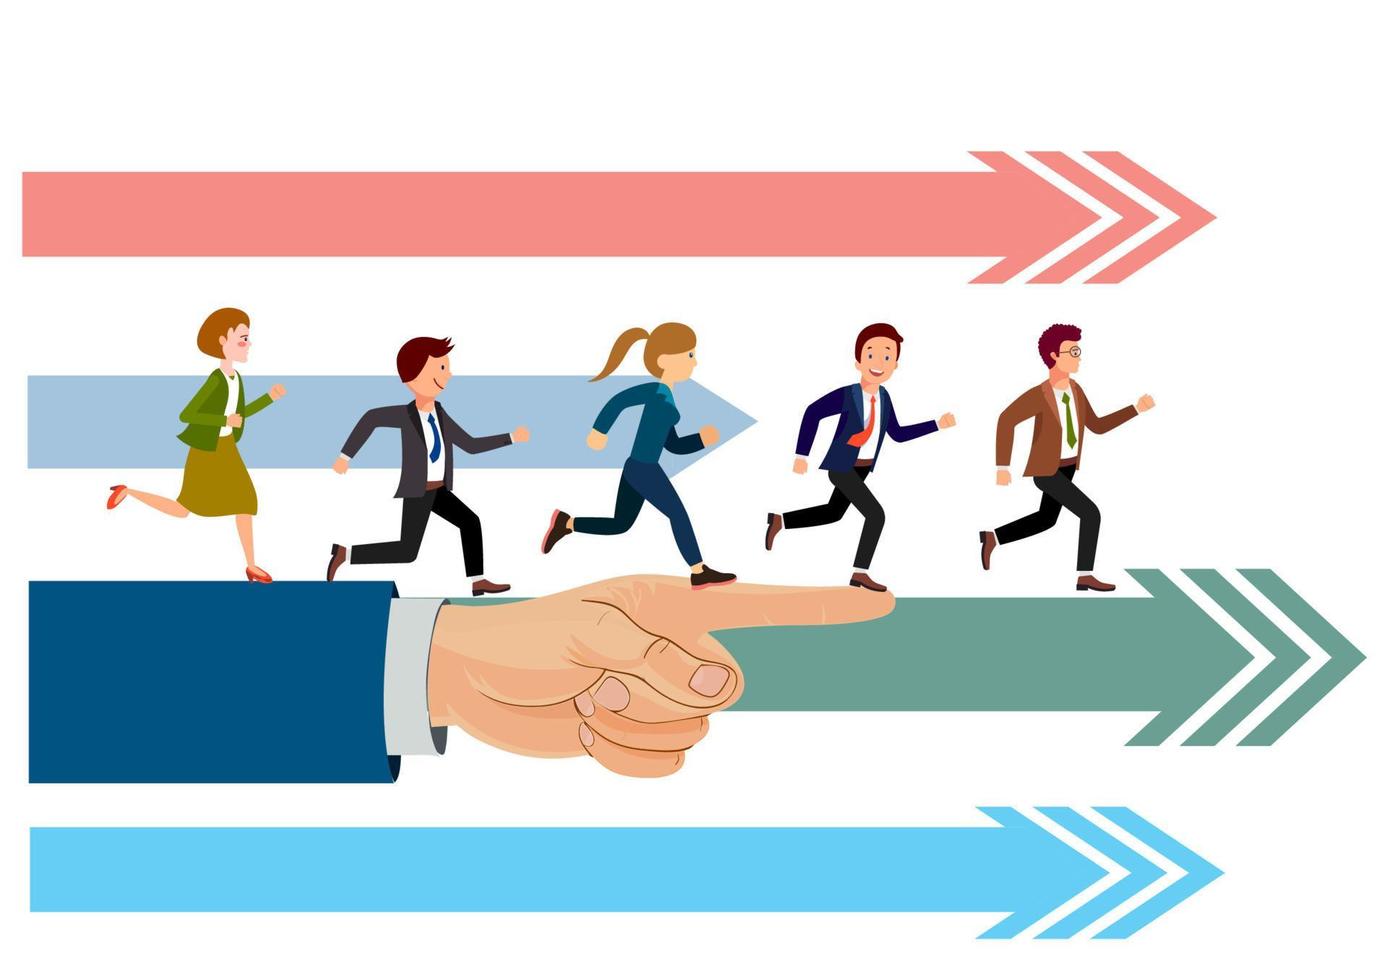 zakenlieden lopen voorop, bestuurd door een .business-team en een leiderschapsconcept. vlakke stijl cartoon illustratie vector